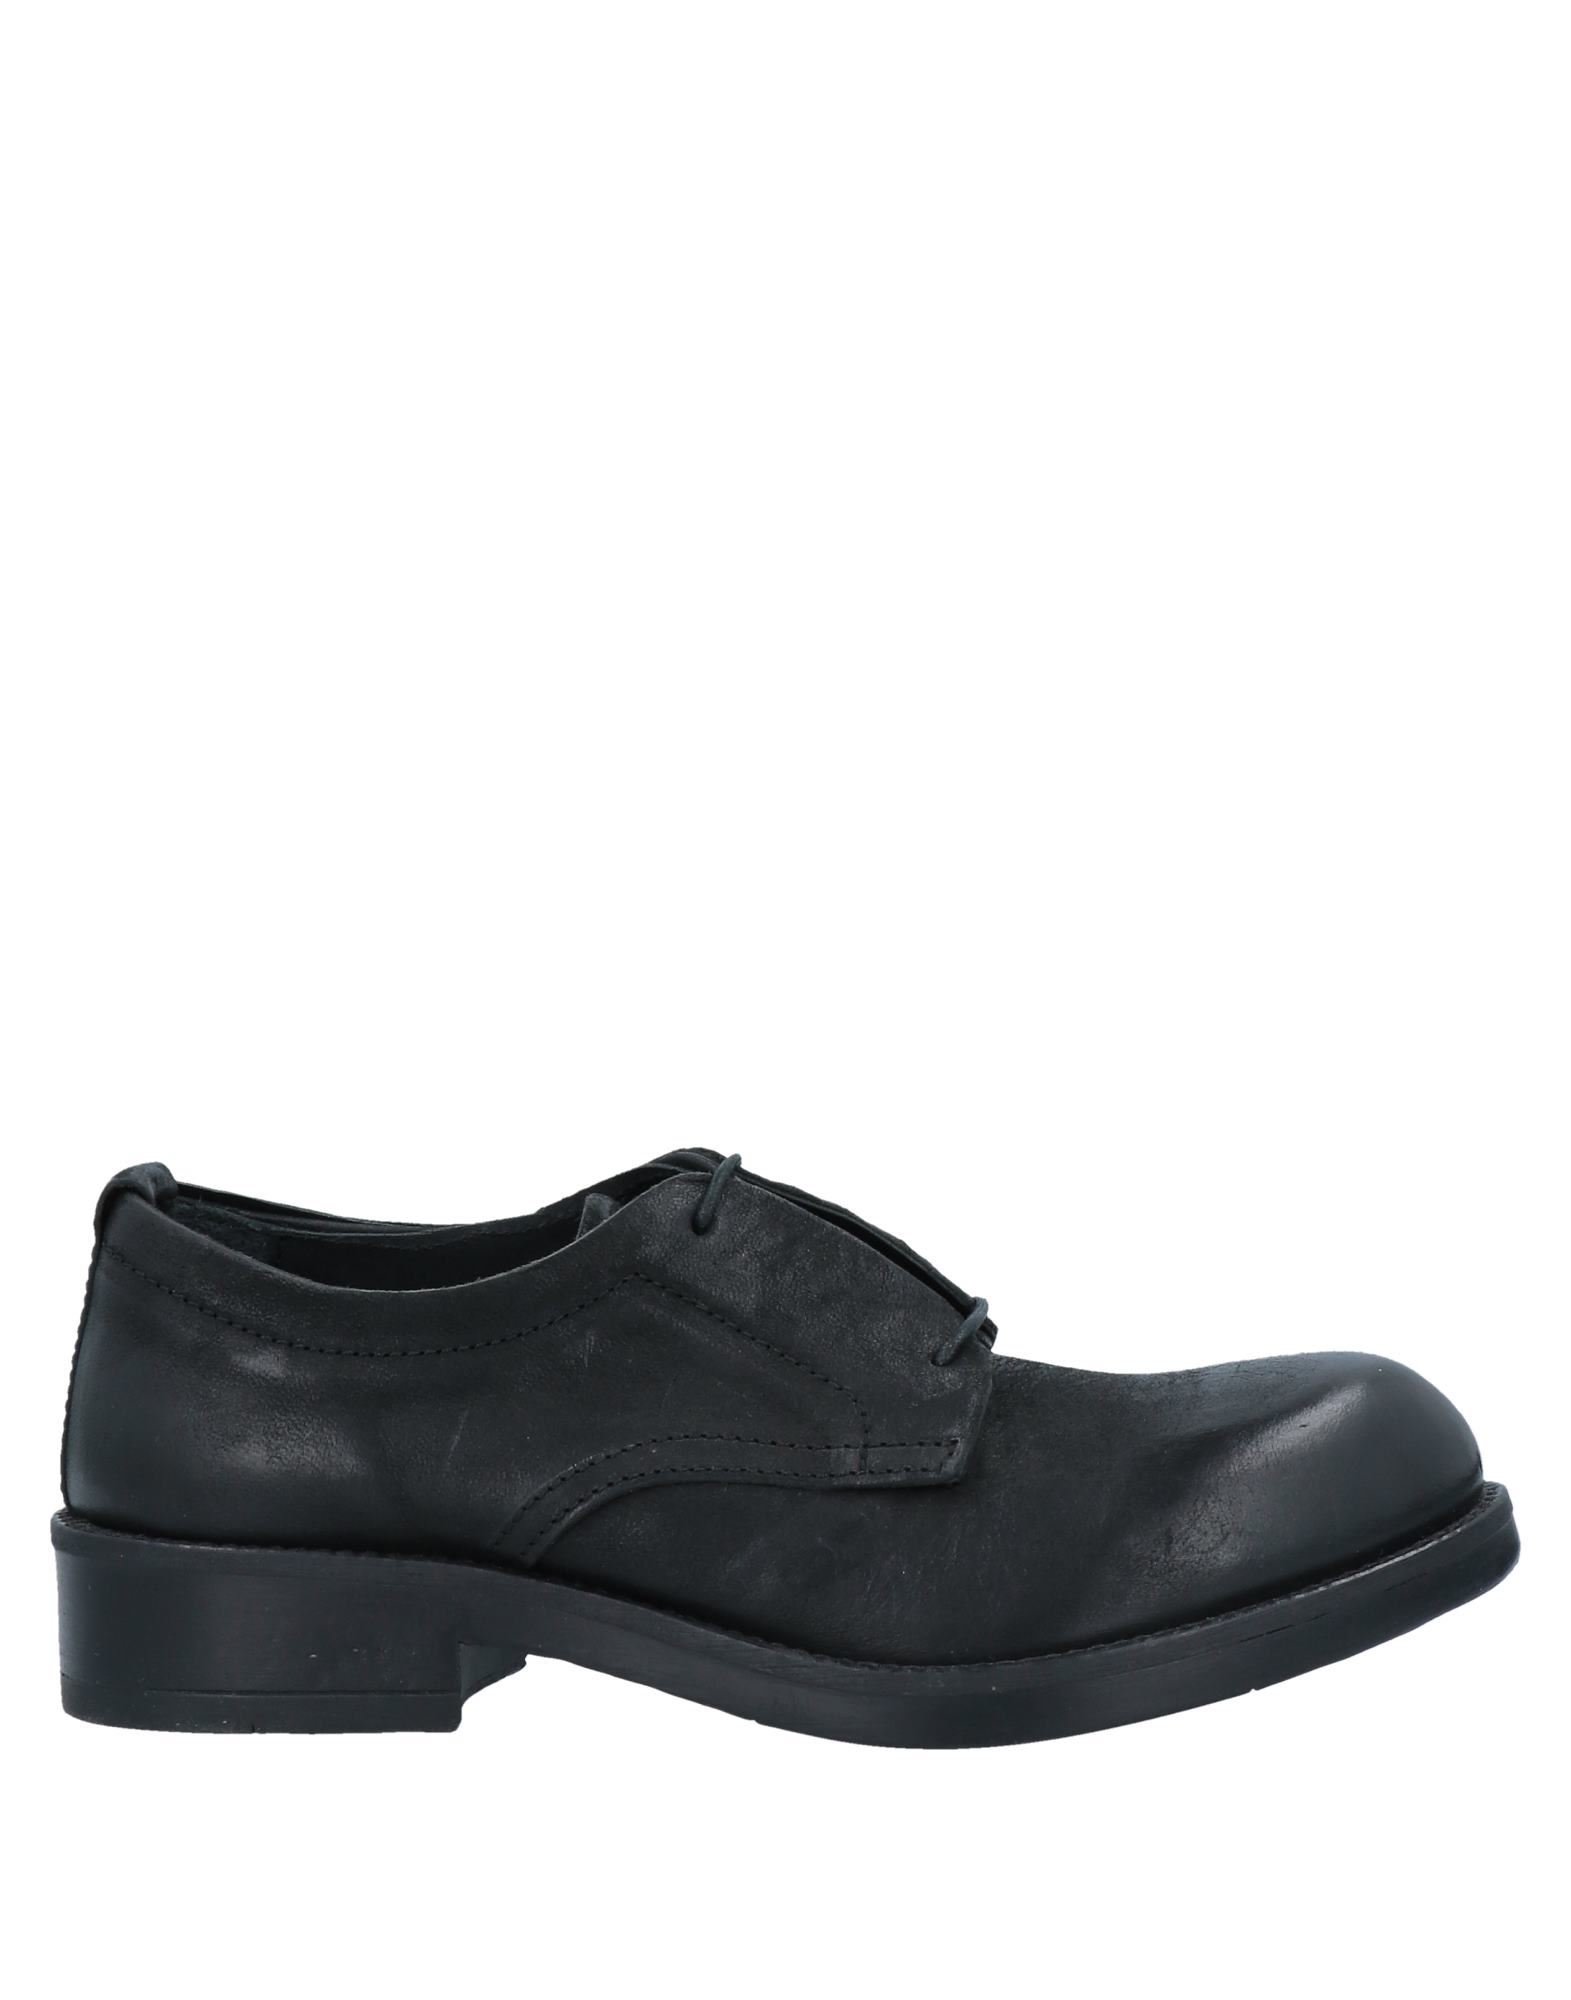 Shop Pawelk's Woman Lace-up Shoes Black Size 5 Soft Leather